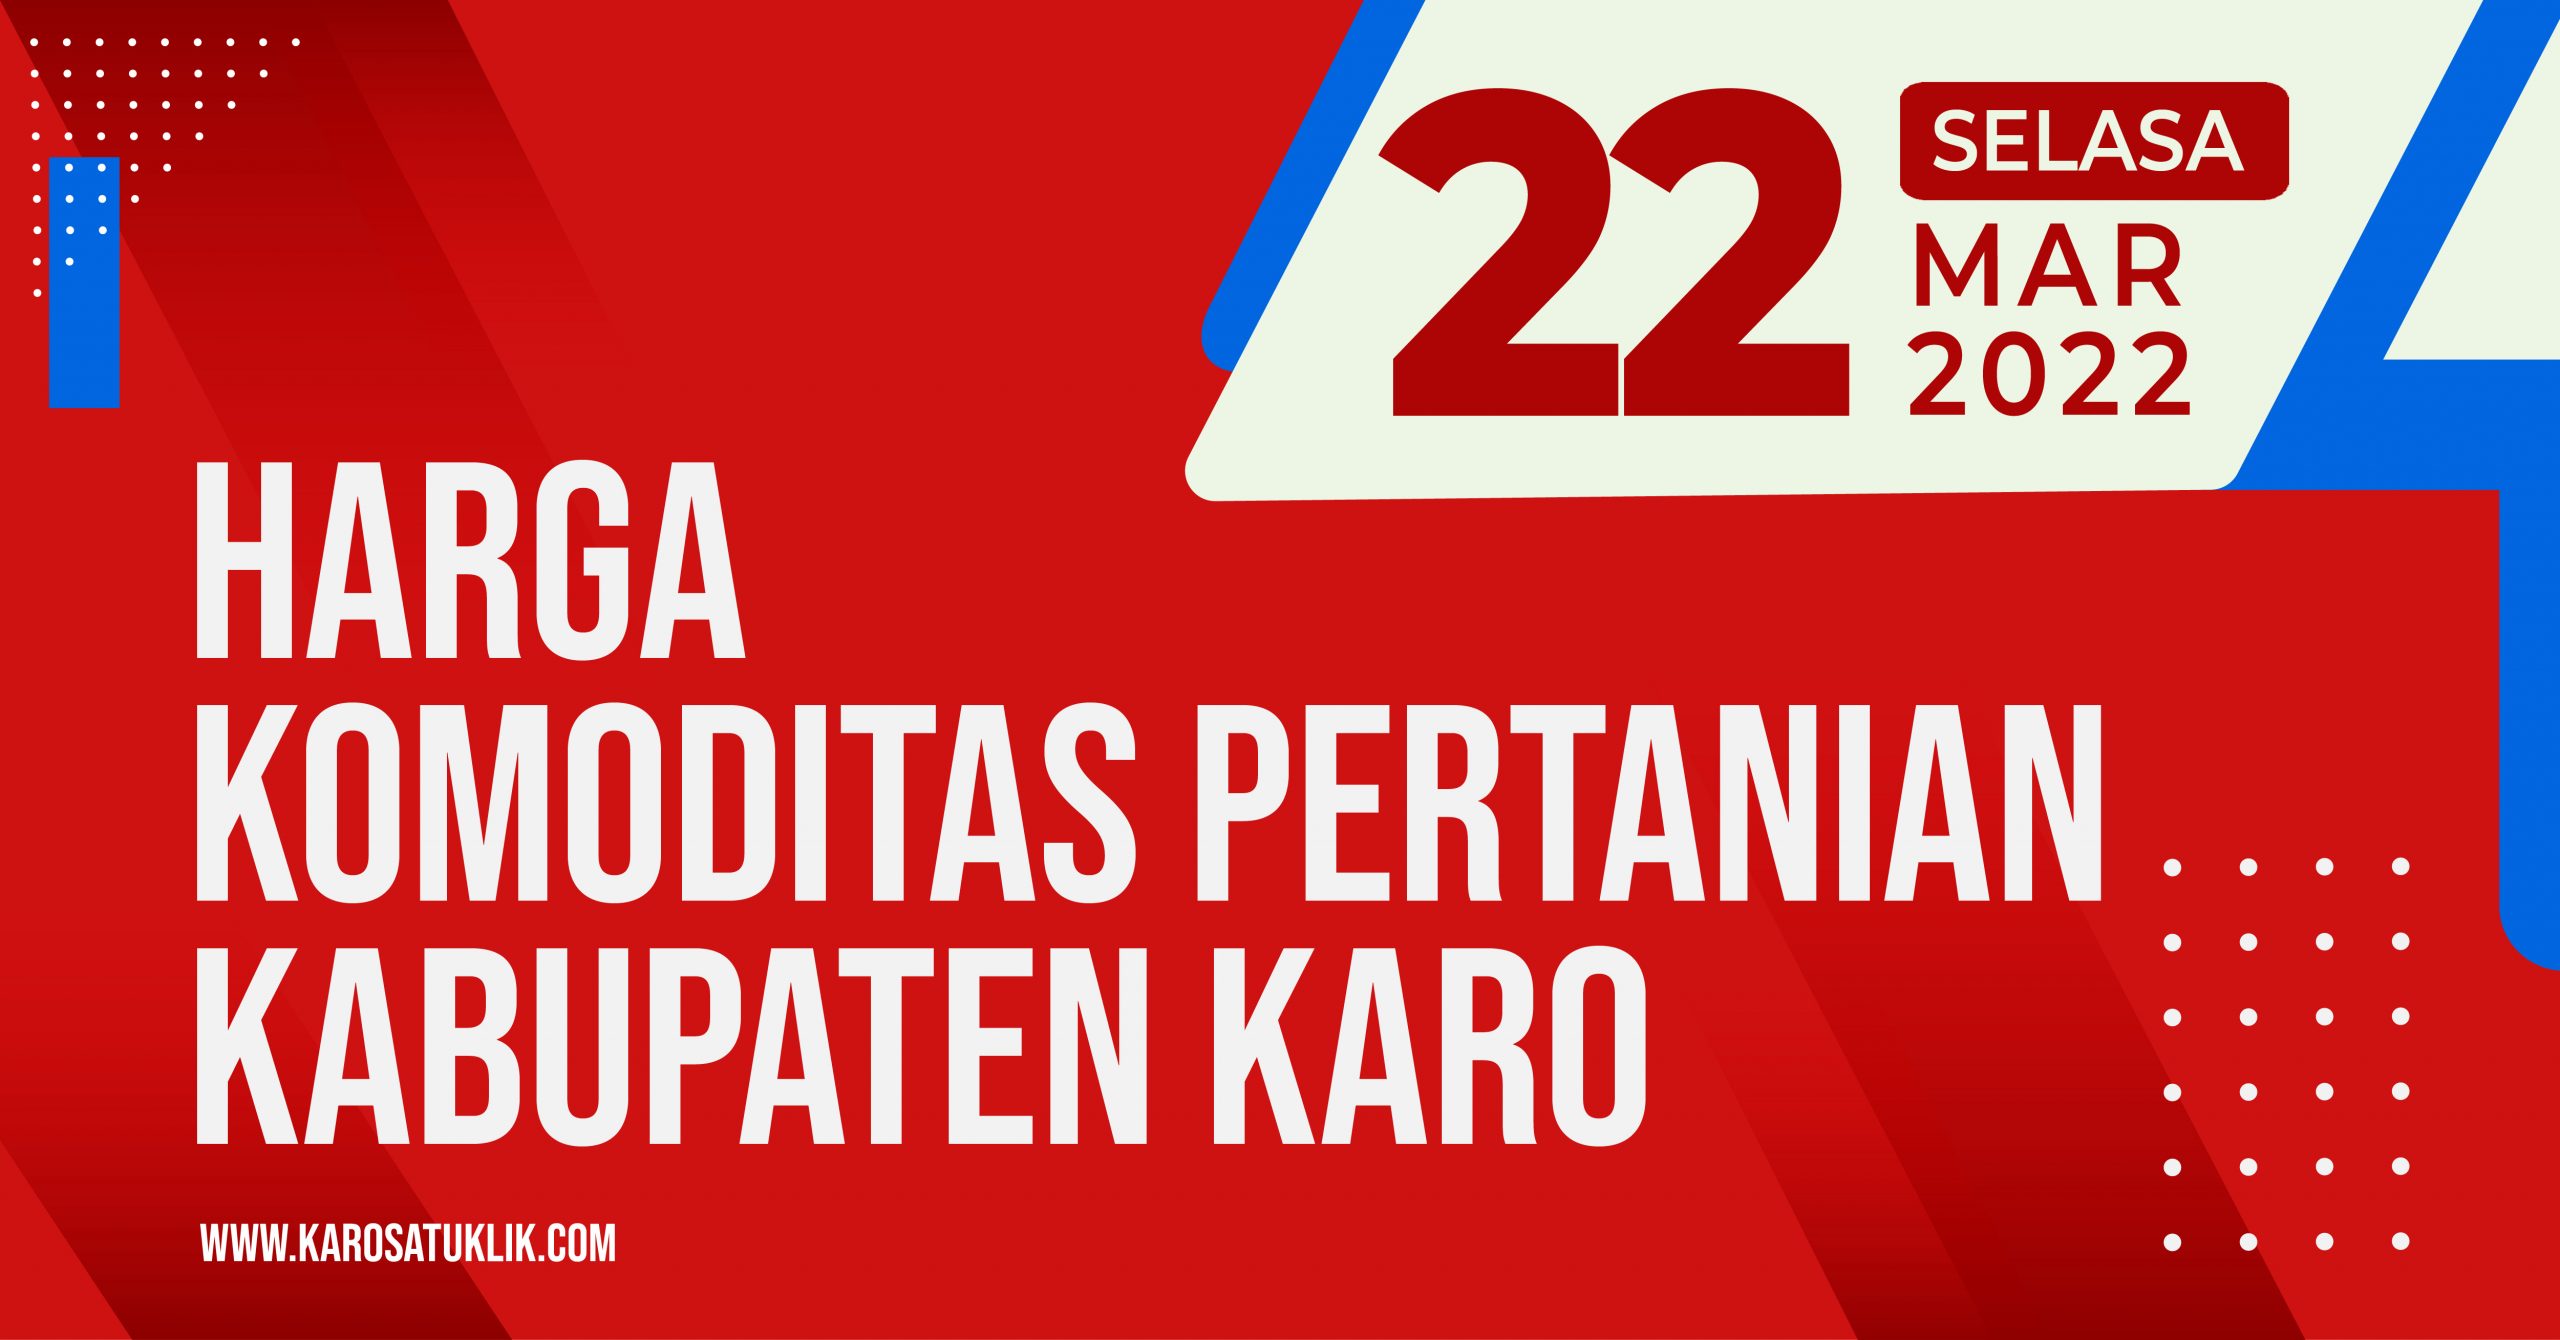 Daftar Harga Komoditas Pertanian Kabupaten Karo, Selasa 22 Maret 2022